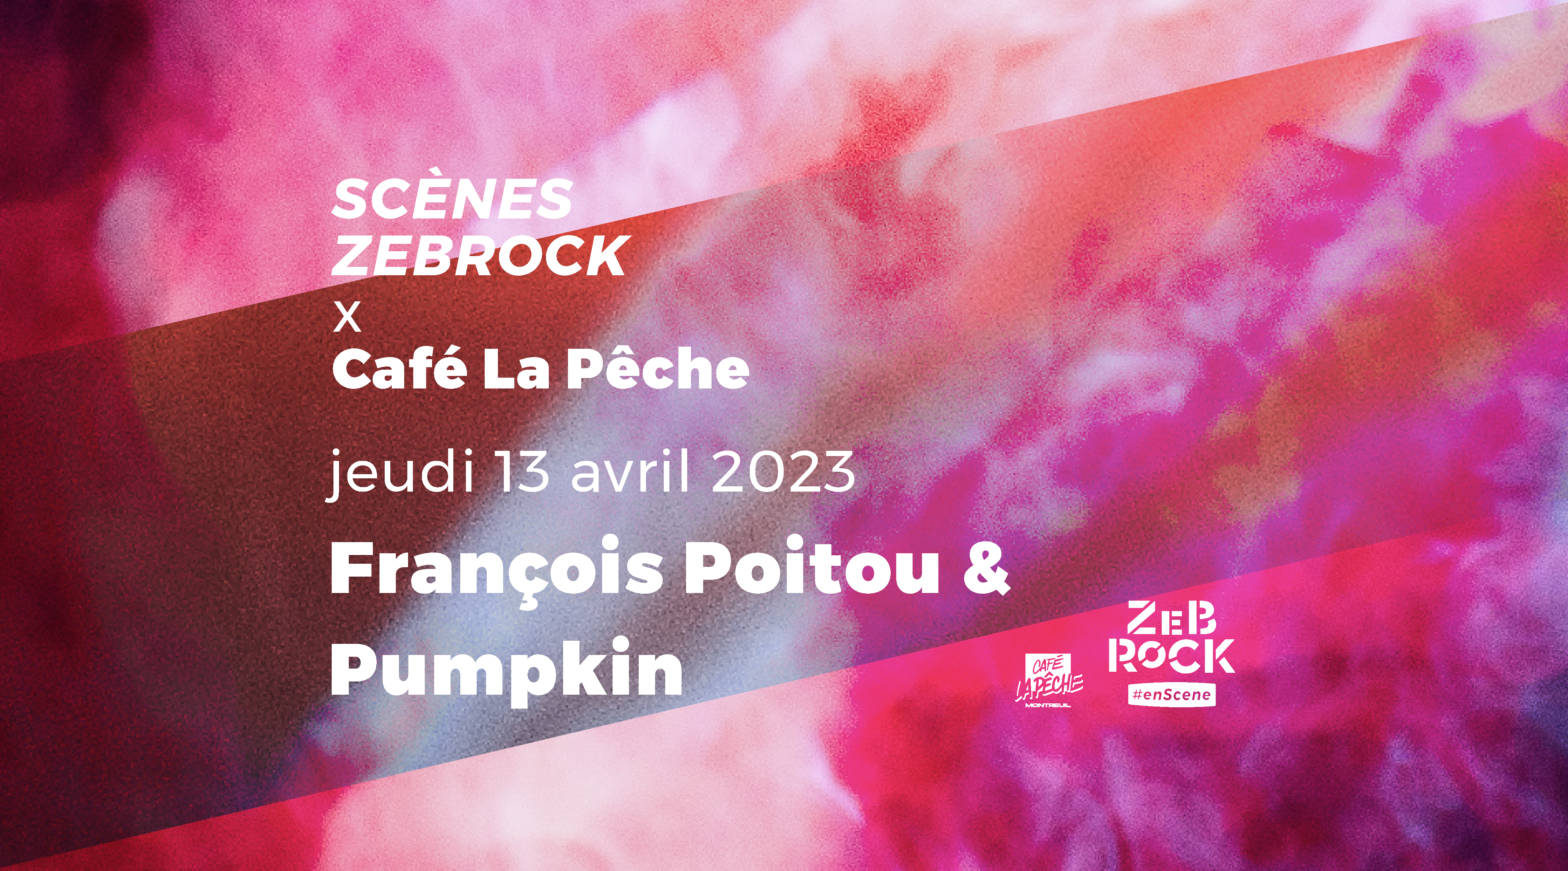 Scènes Zebrock x Café La Pêche | François Poitou & Pumpkin